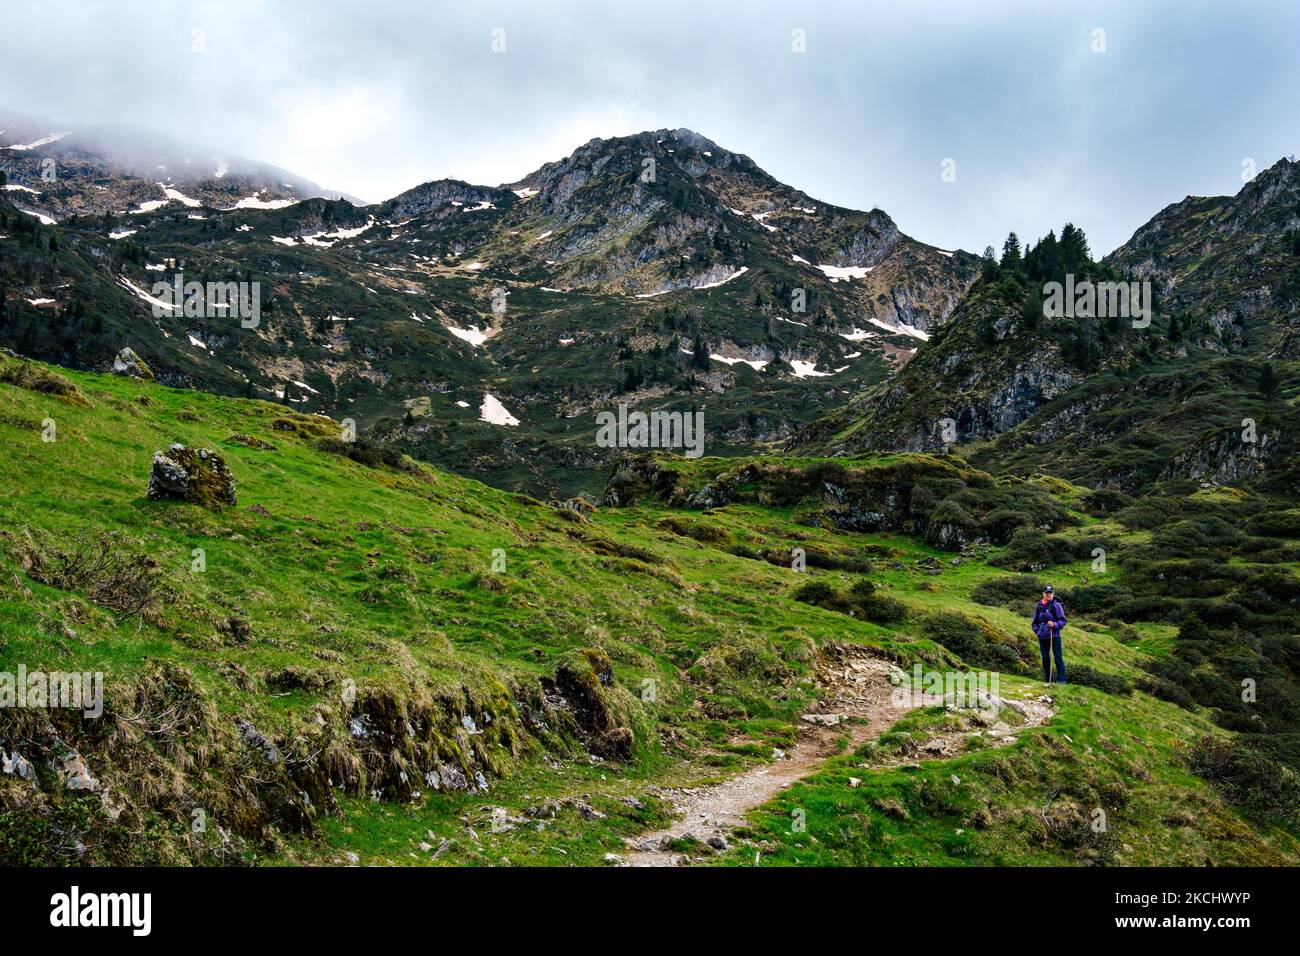 Sentiero escursionistico nei pascoli vicino al lago Ayes nella catena montuosa dei Pirenei francesi in una giornata nuvolosa Foto Stock